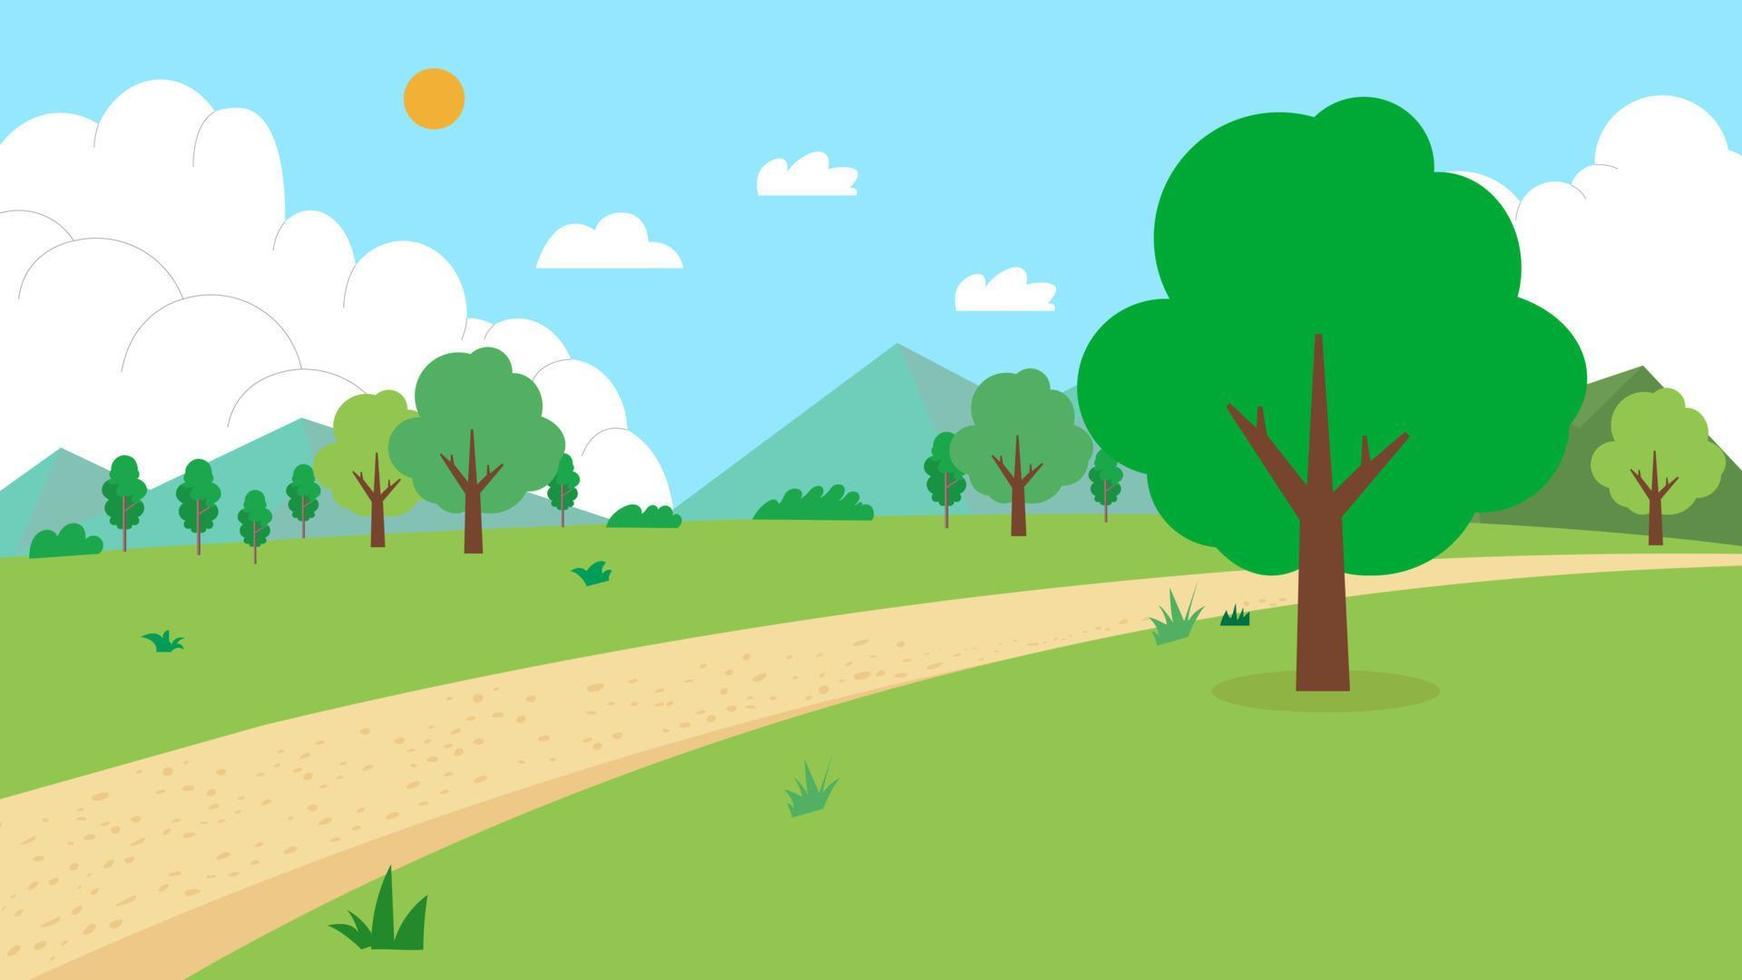 Naturlandschaft mit Straßenvektorillustration.Feld mit Berg, Bäumen, Sonne, Himmel und Wolken.grüner Park mit natürlicher Szene.Cartoon ländlicher Landschaftssommer. vektor